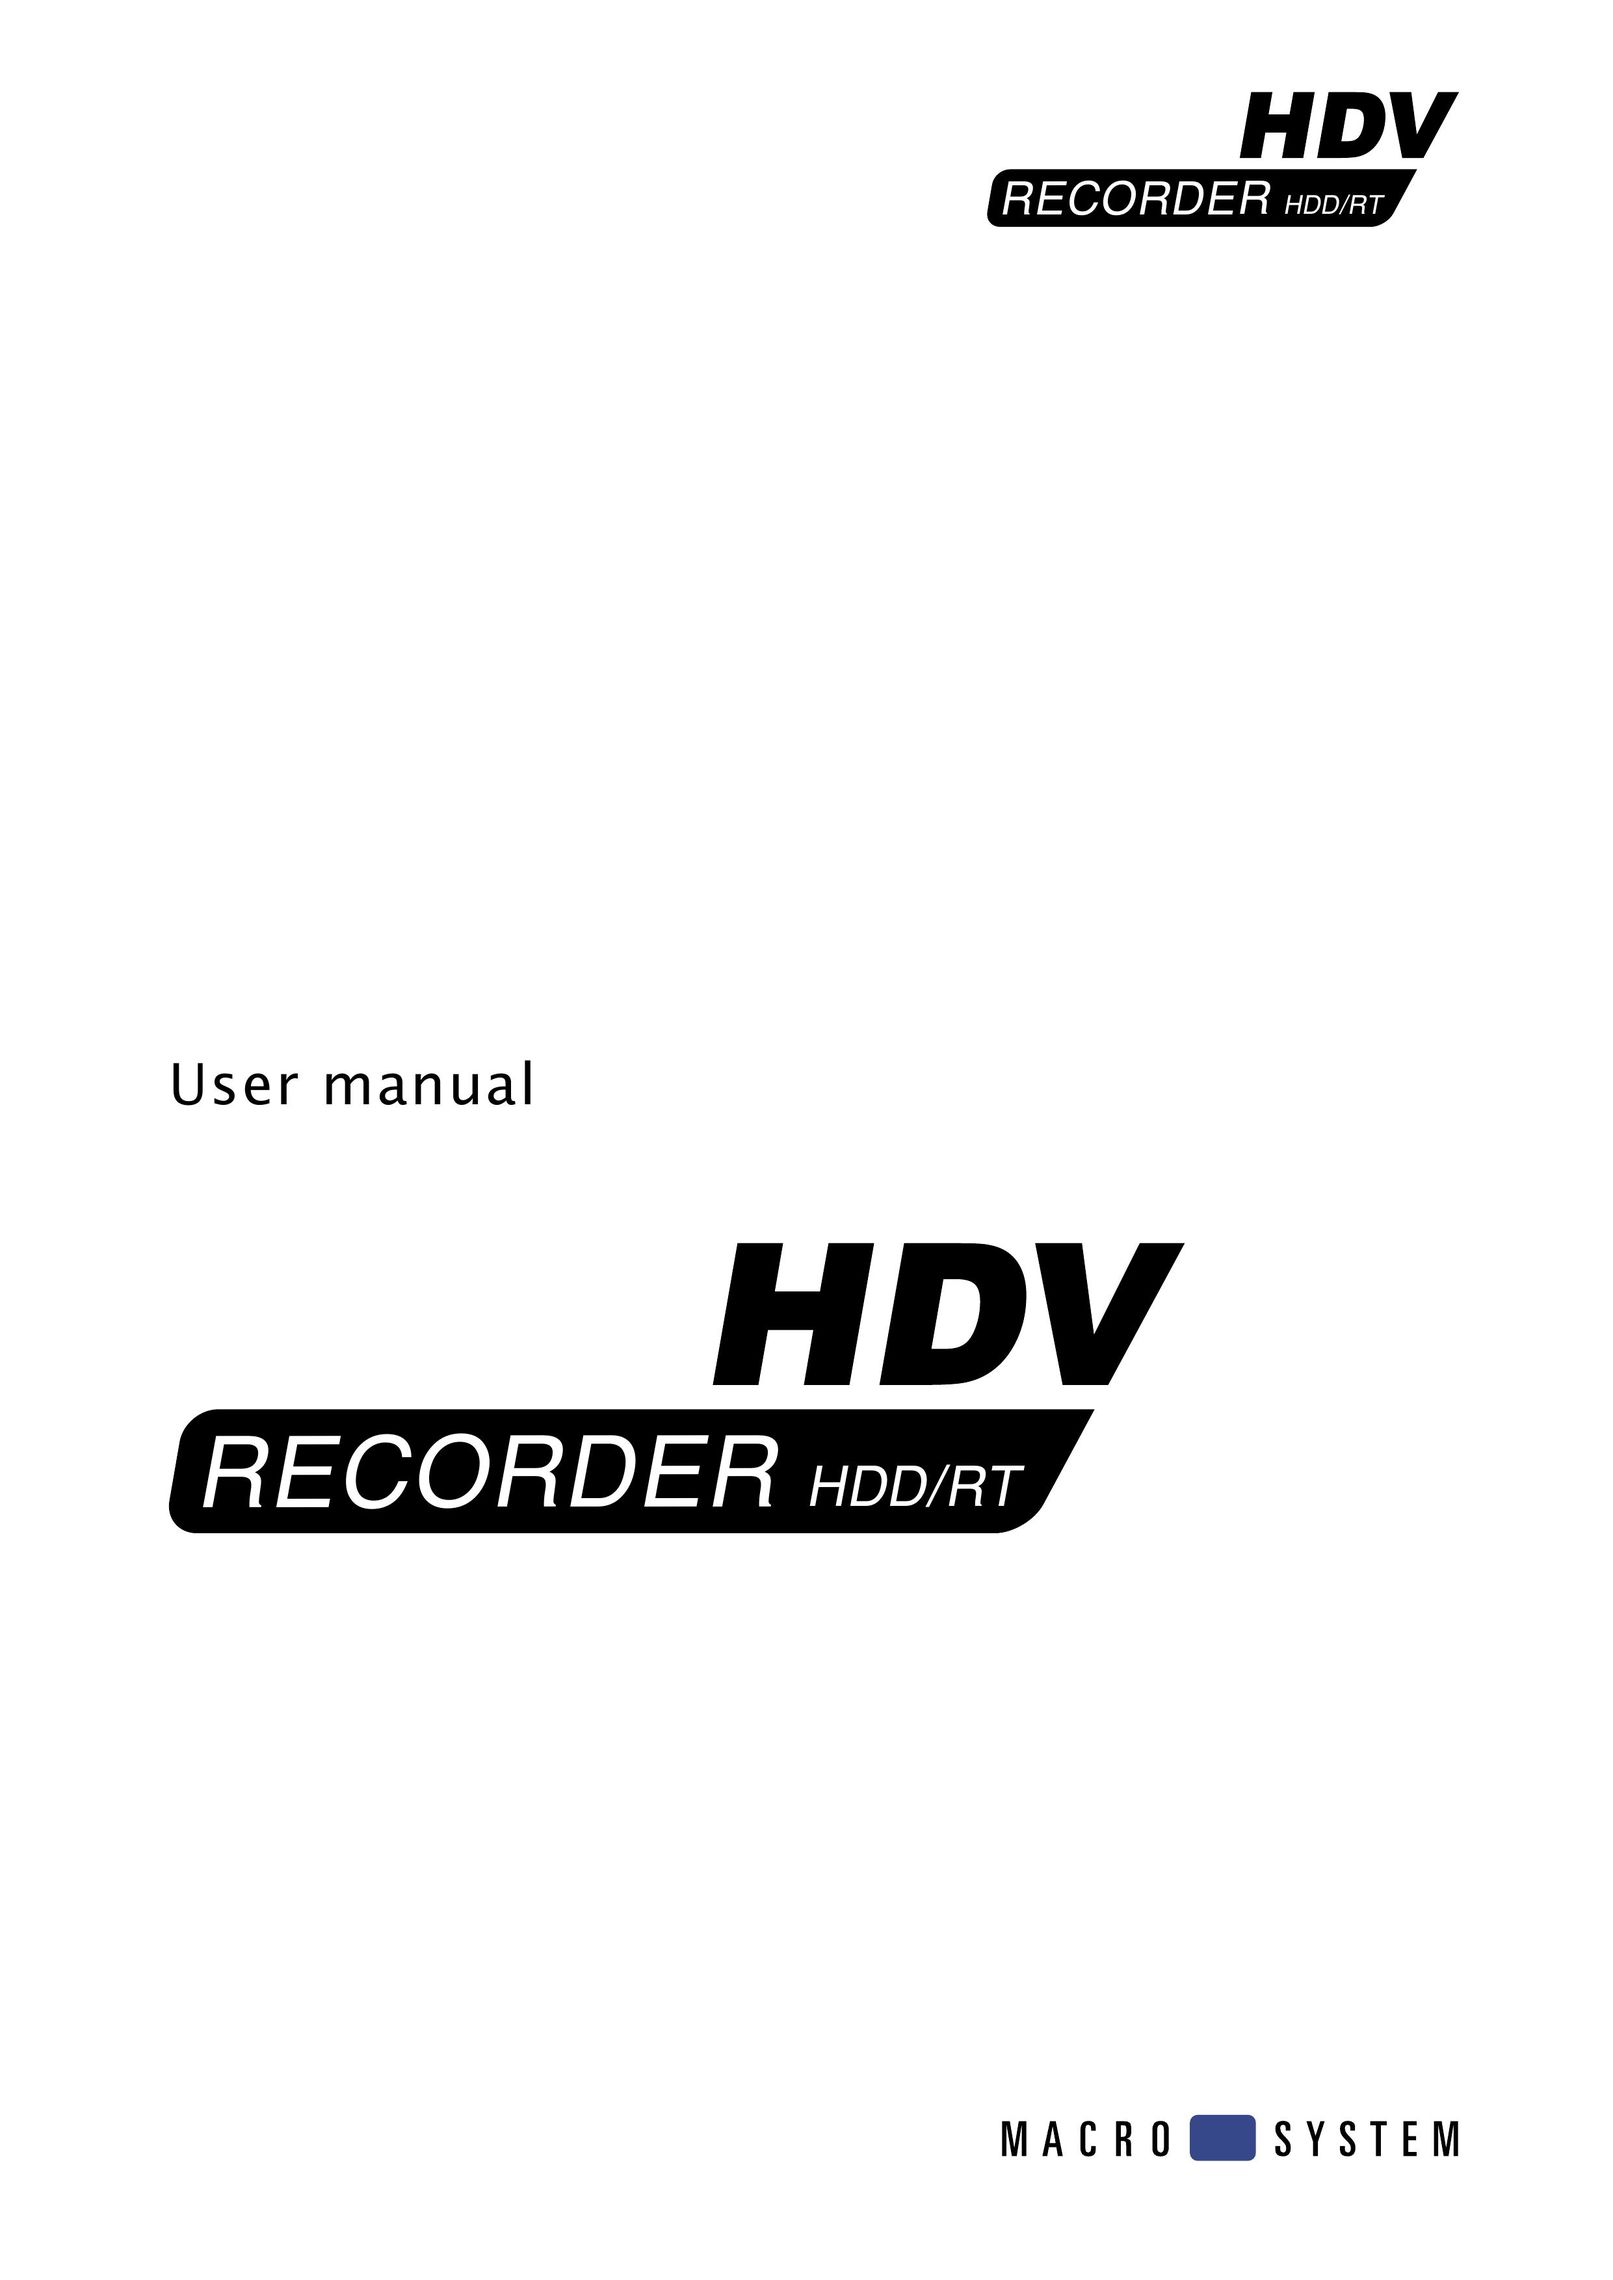 MacroSystem Digital Video HDV-Recorder DVR User Manual